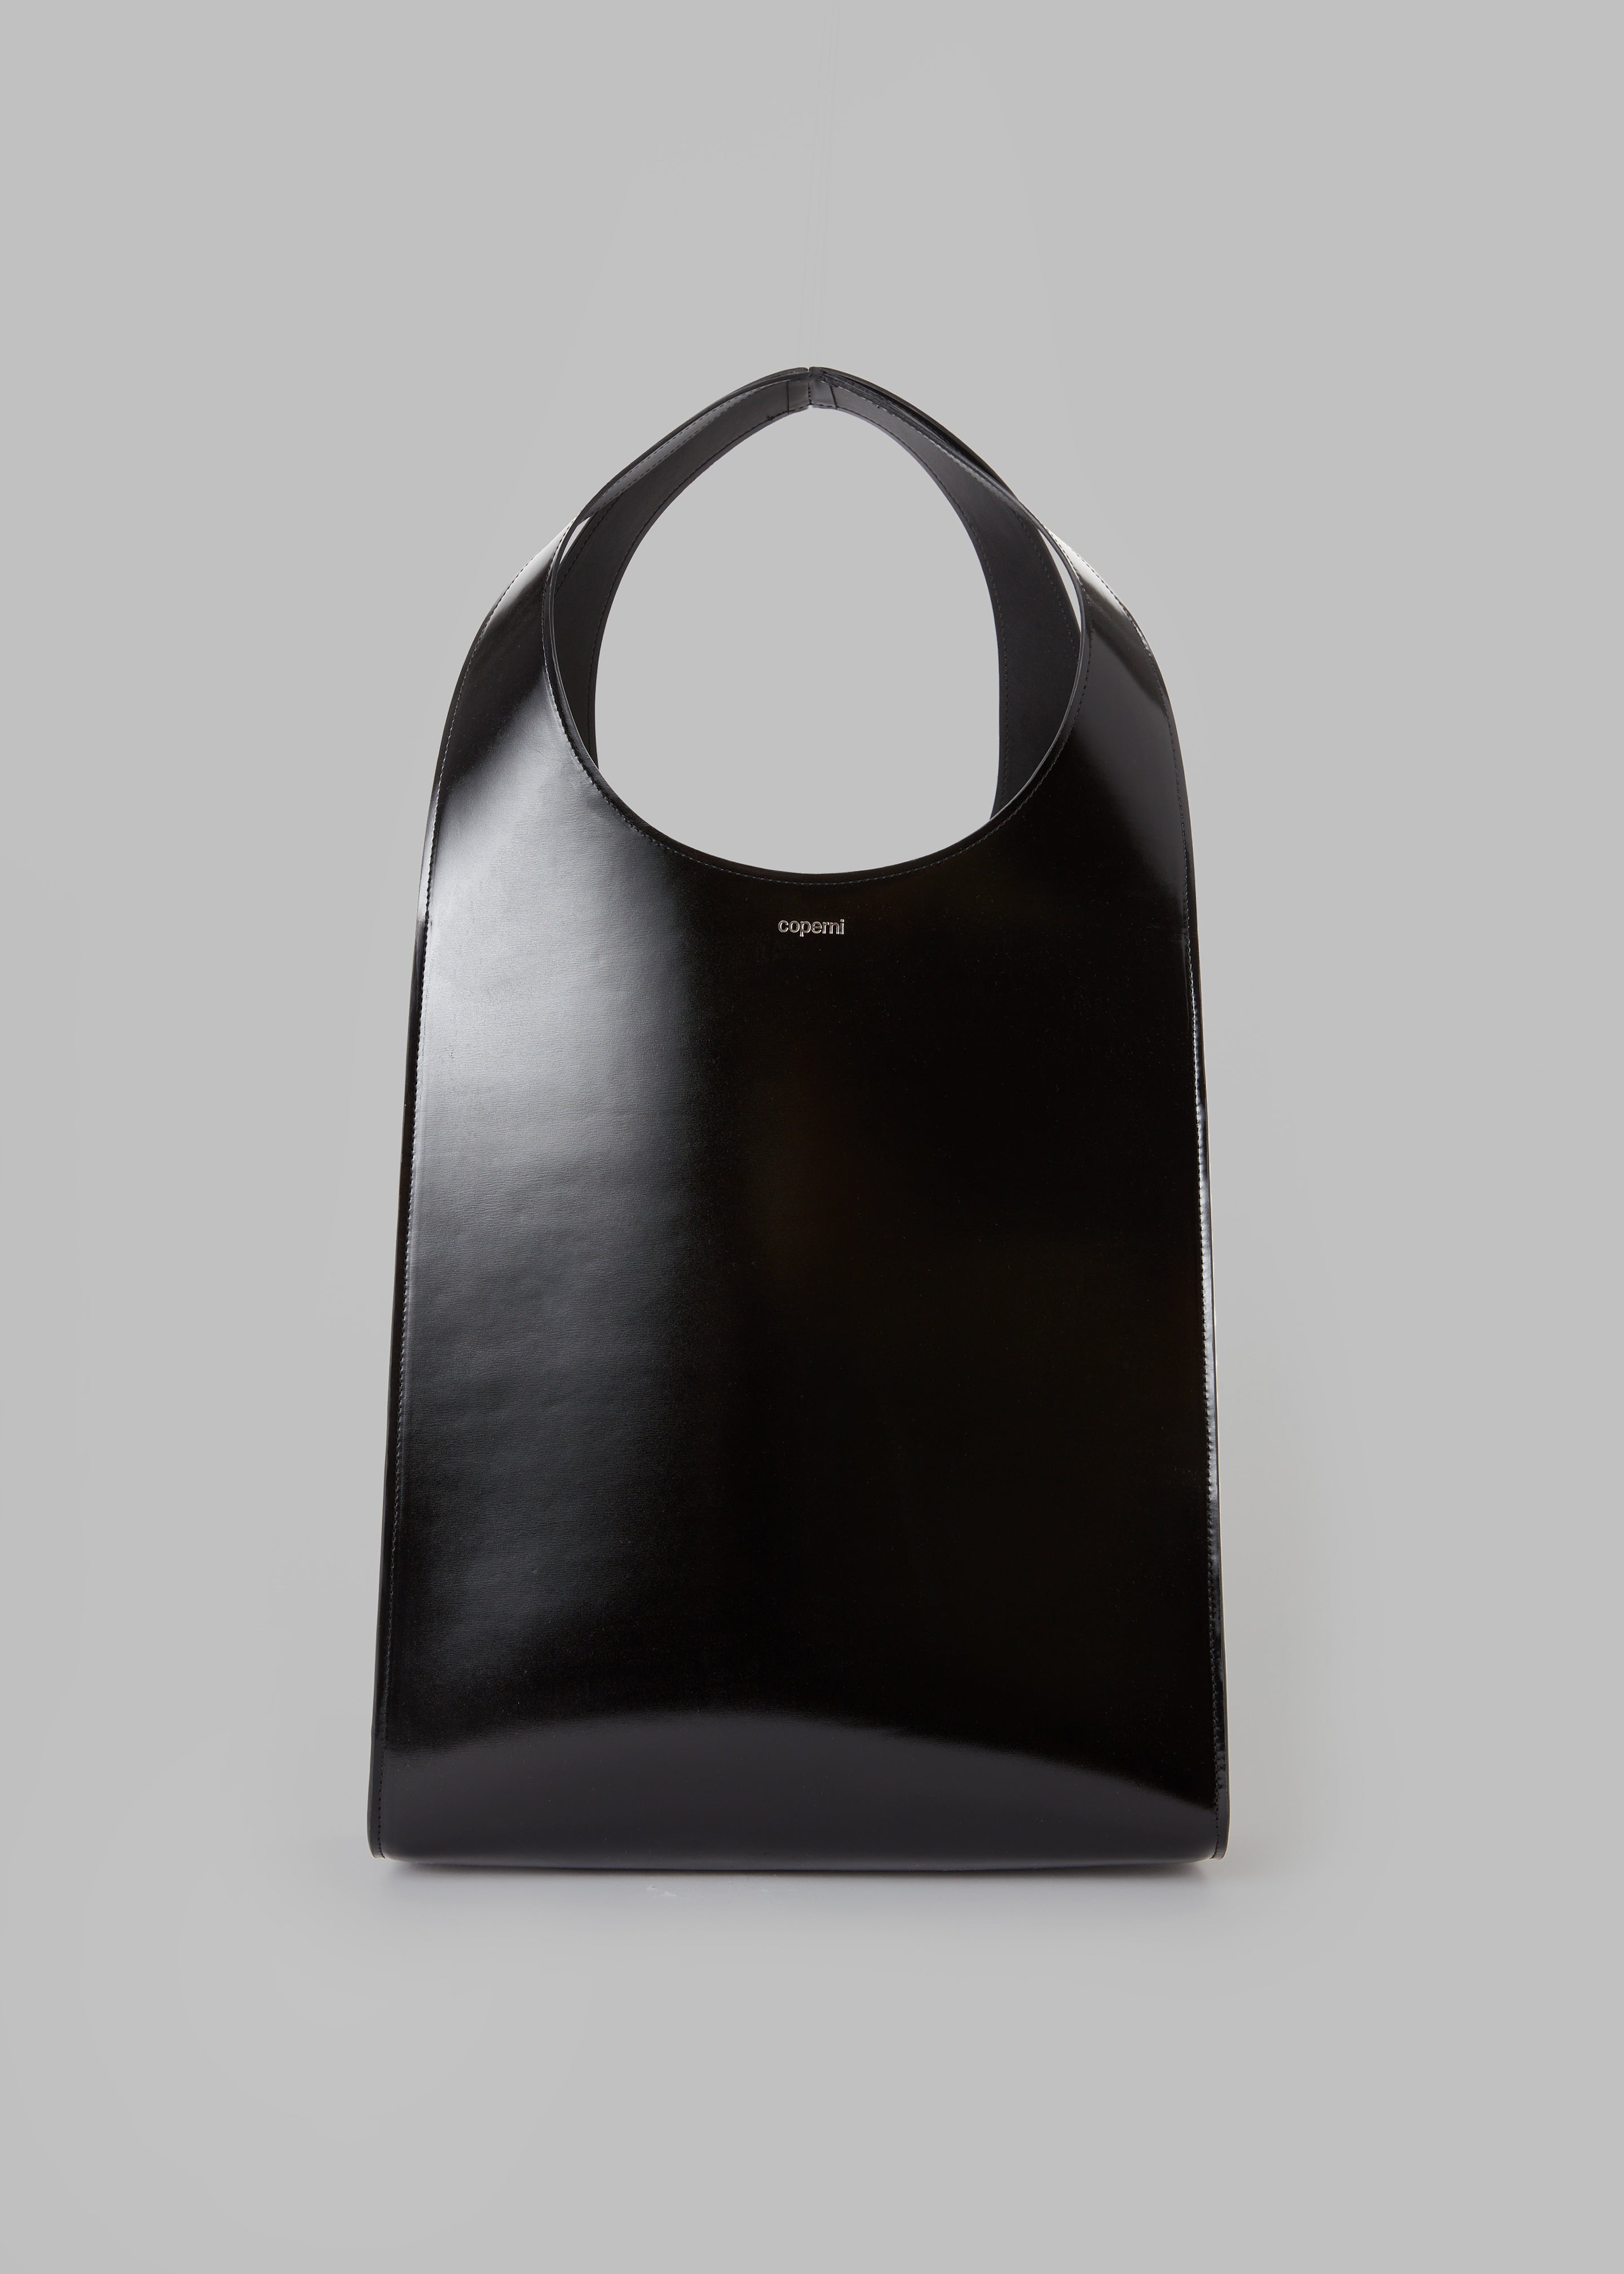 Coperni Swipe Tote Bag - Glossy Black - 3